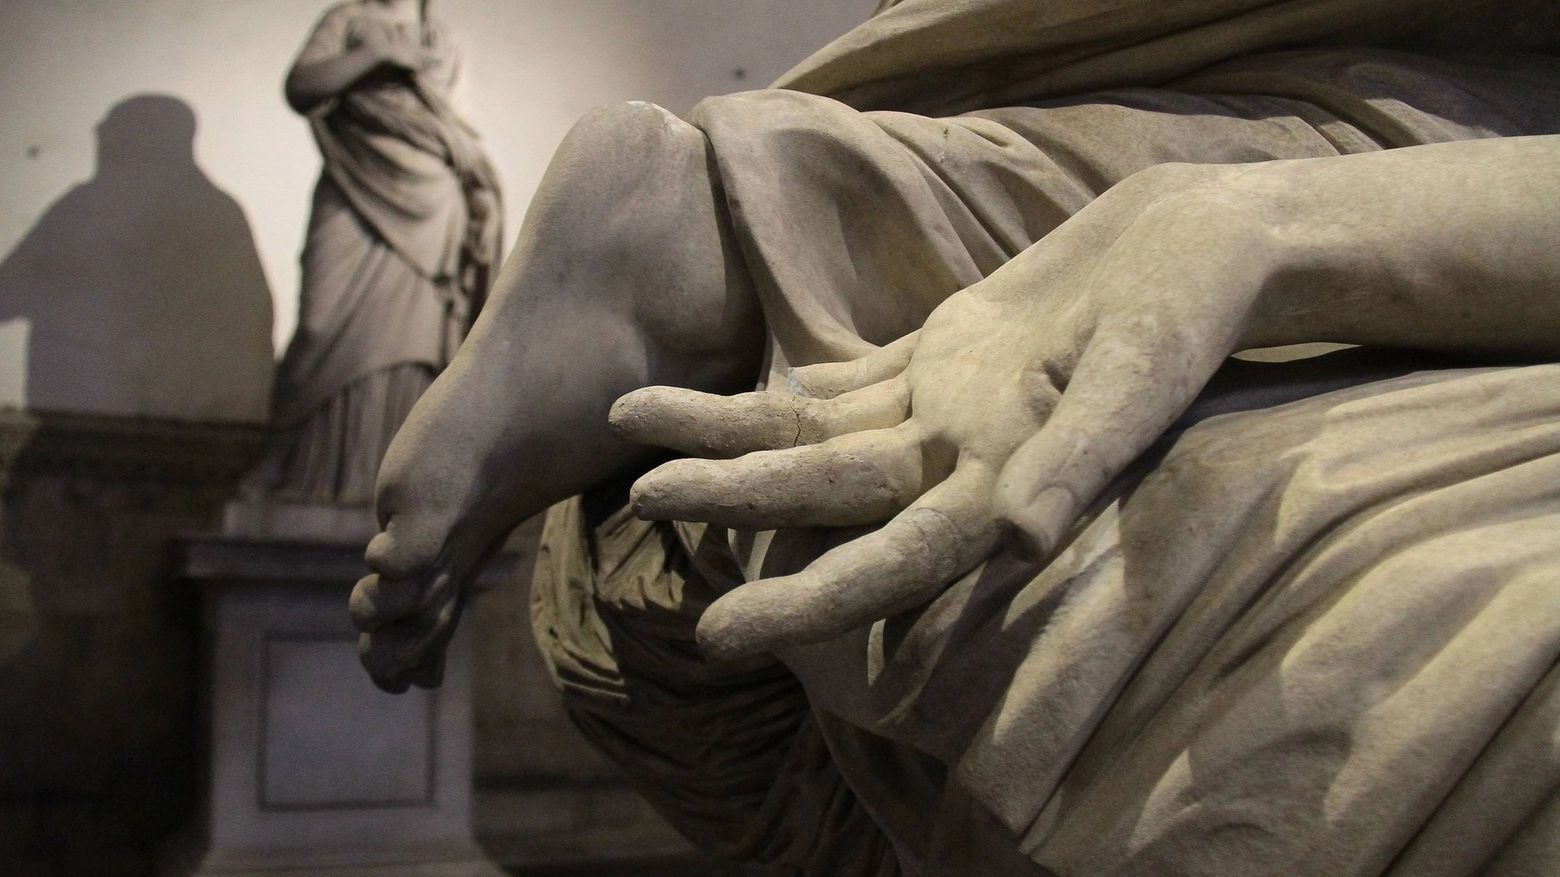 Il dito staccato alla statua nella Loggia dei Lanzi (Umberto Visintini/Pressphoto)